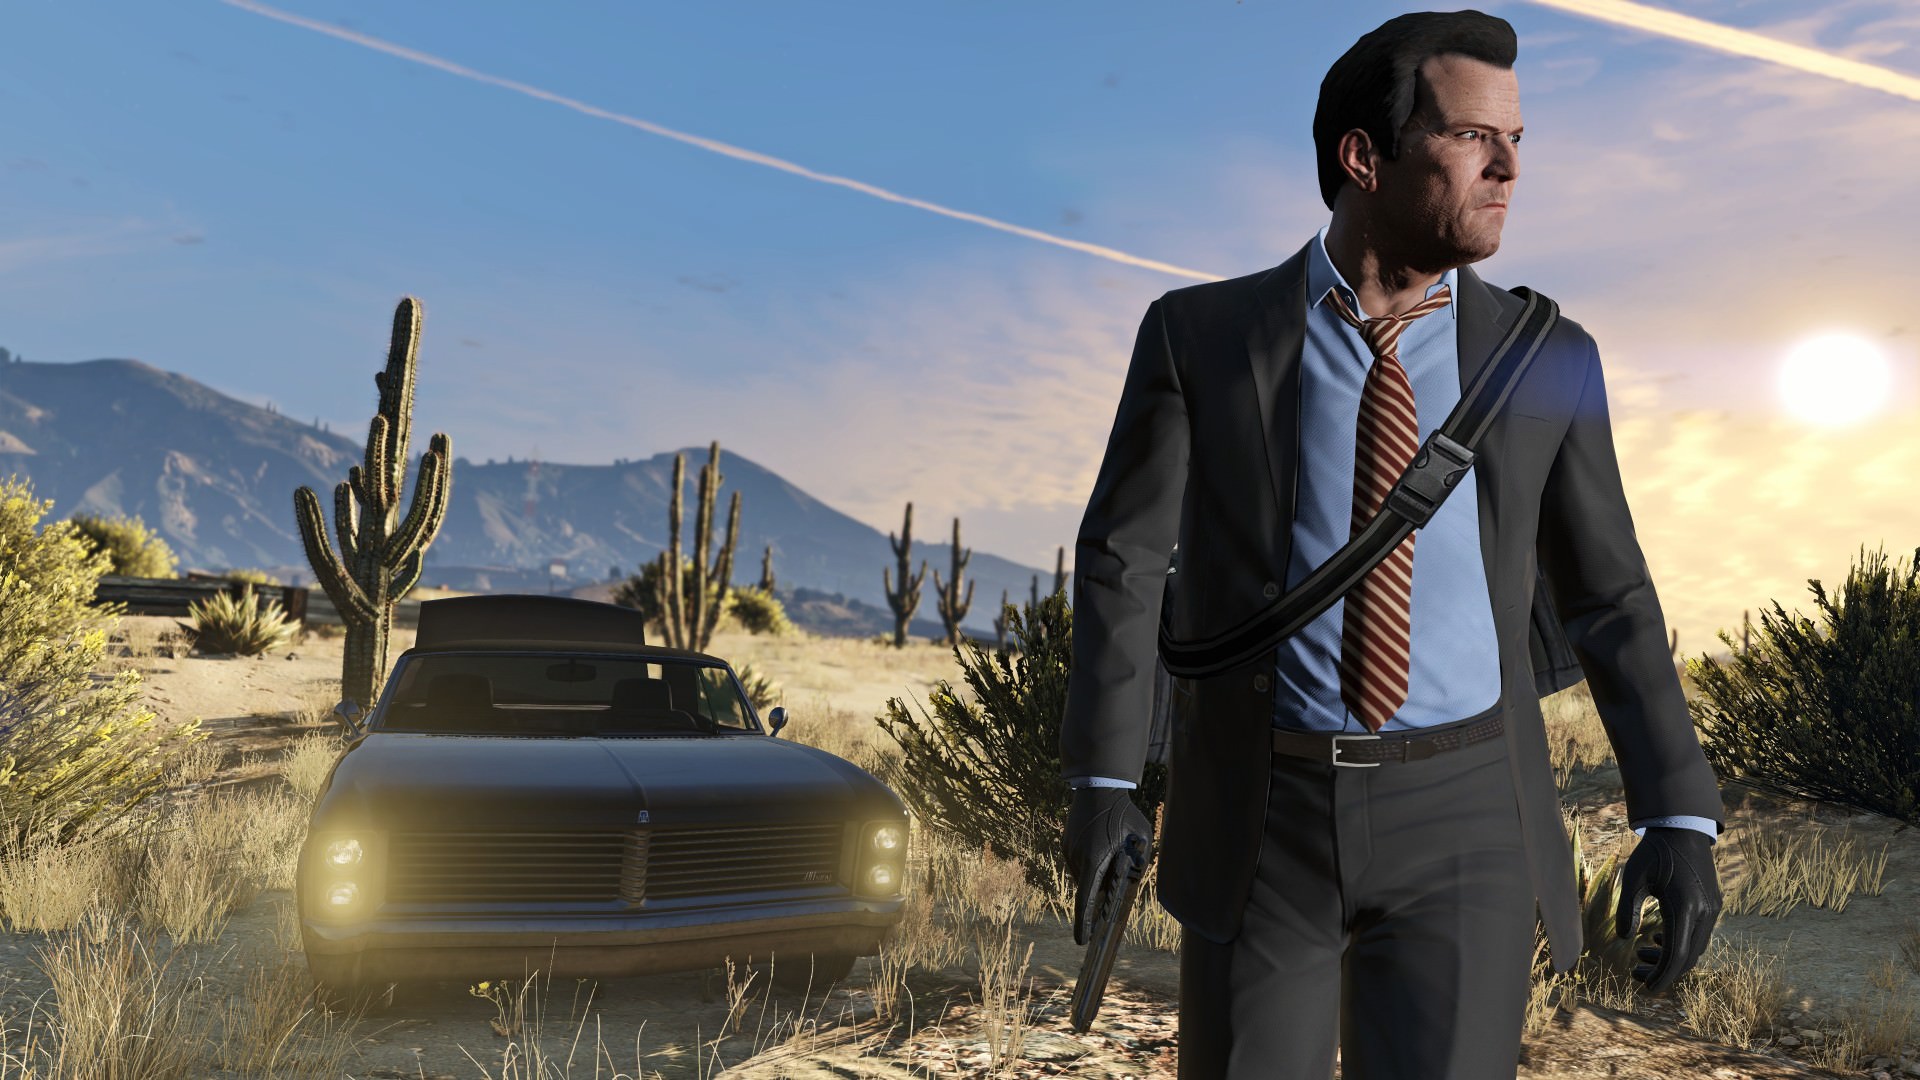 احتمال تأخیر دوباره نسخه نسل ۹ بازی Grand Theft Auto V